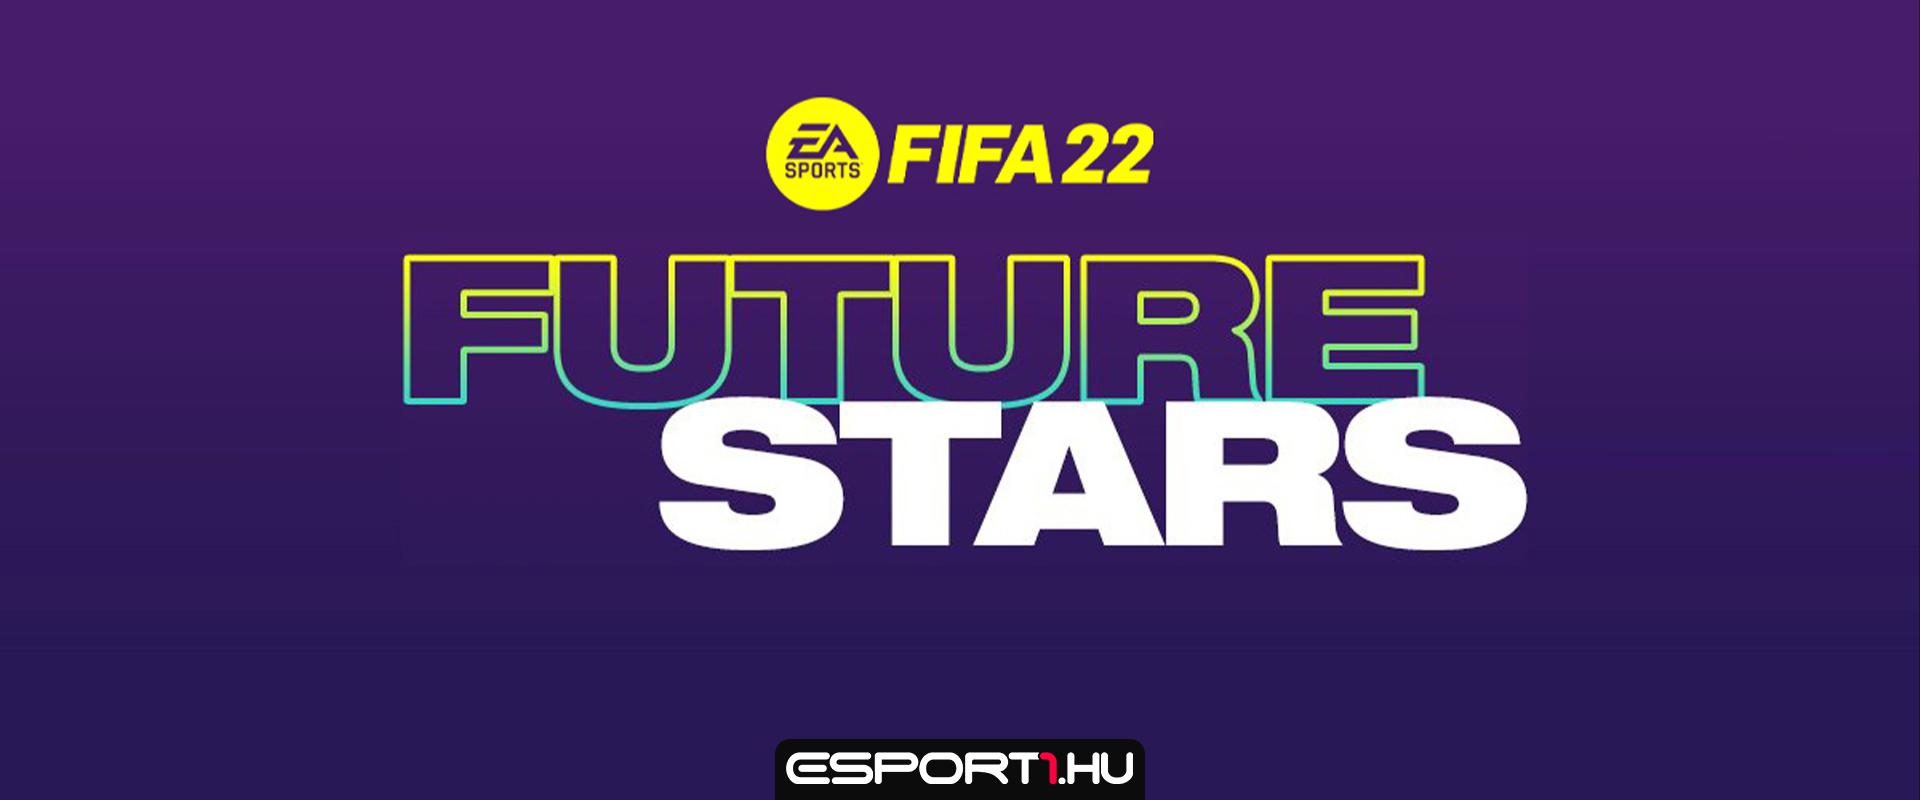 Íme a lista, hogy mit kaphatsz egy 85x10 FIFA 22 Future Star Swaps packból